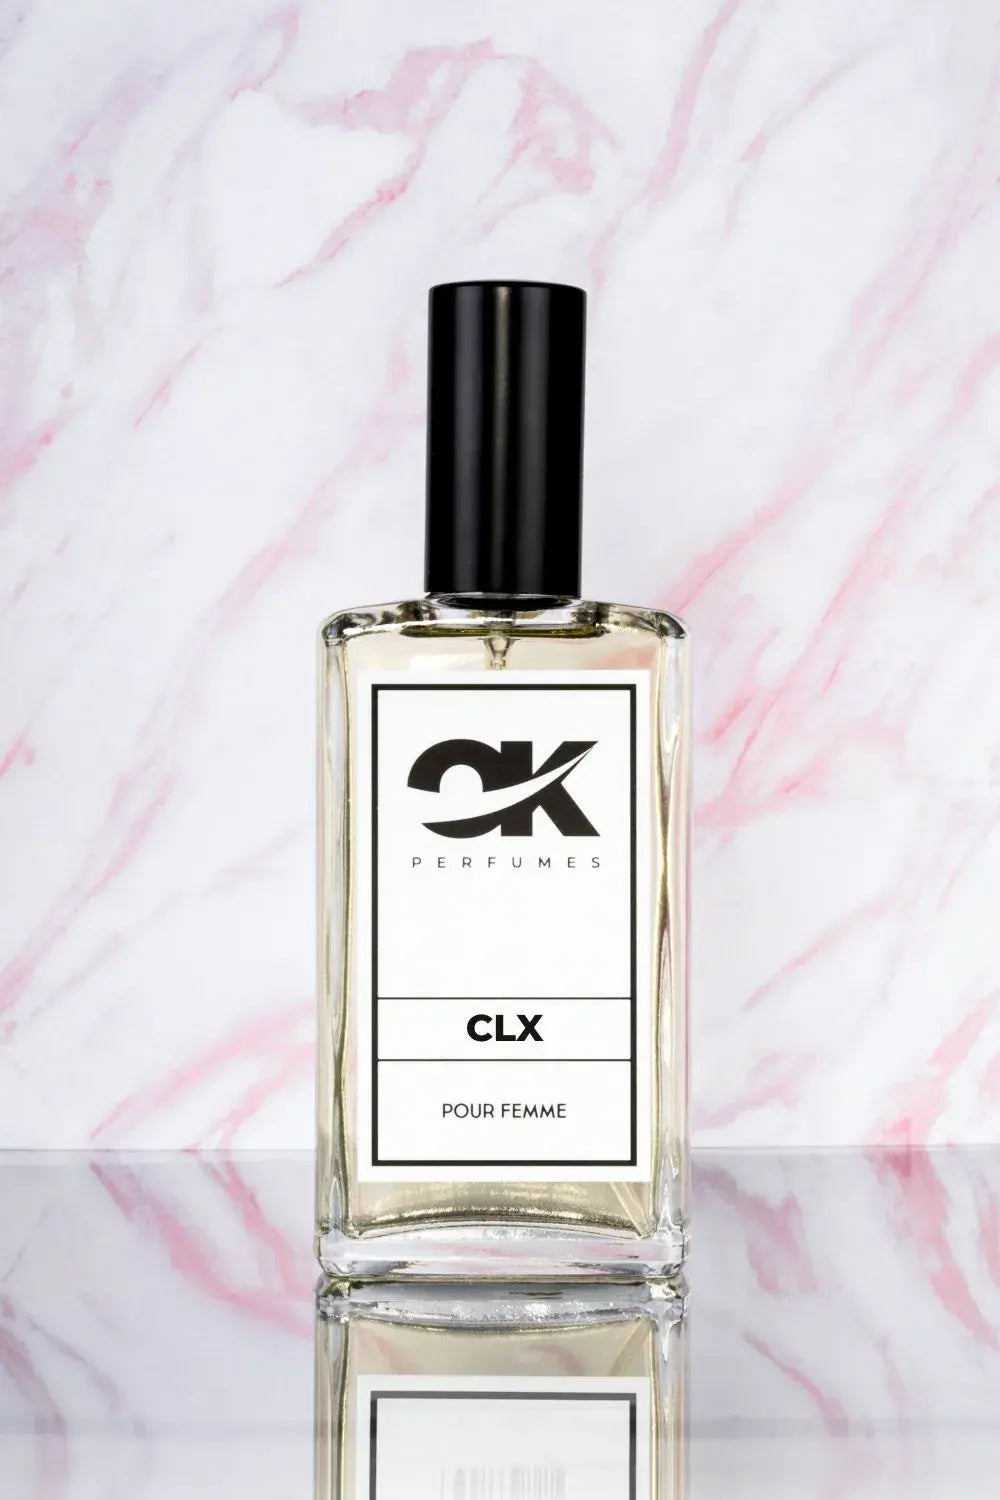 CLX - Recuerda a Aromatics Elixir Clinique